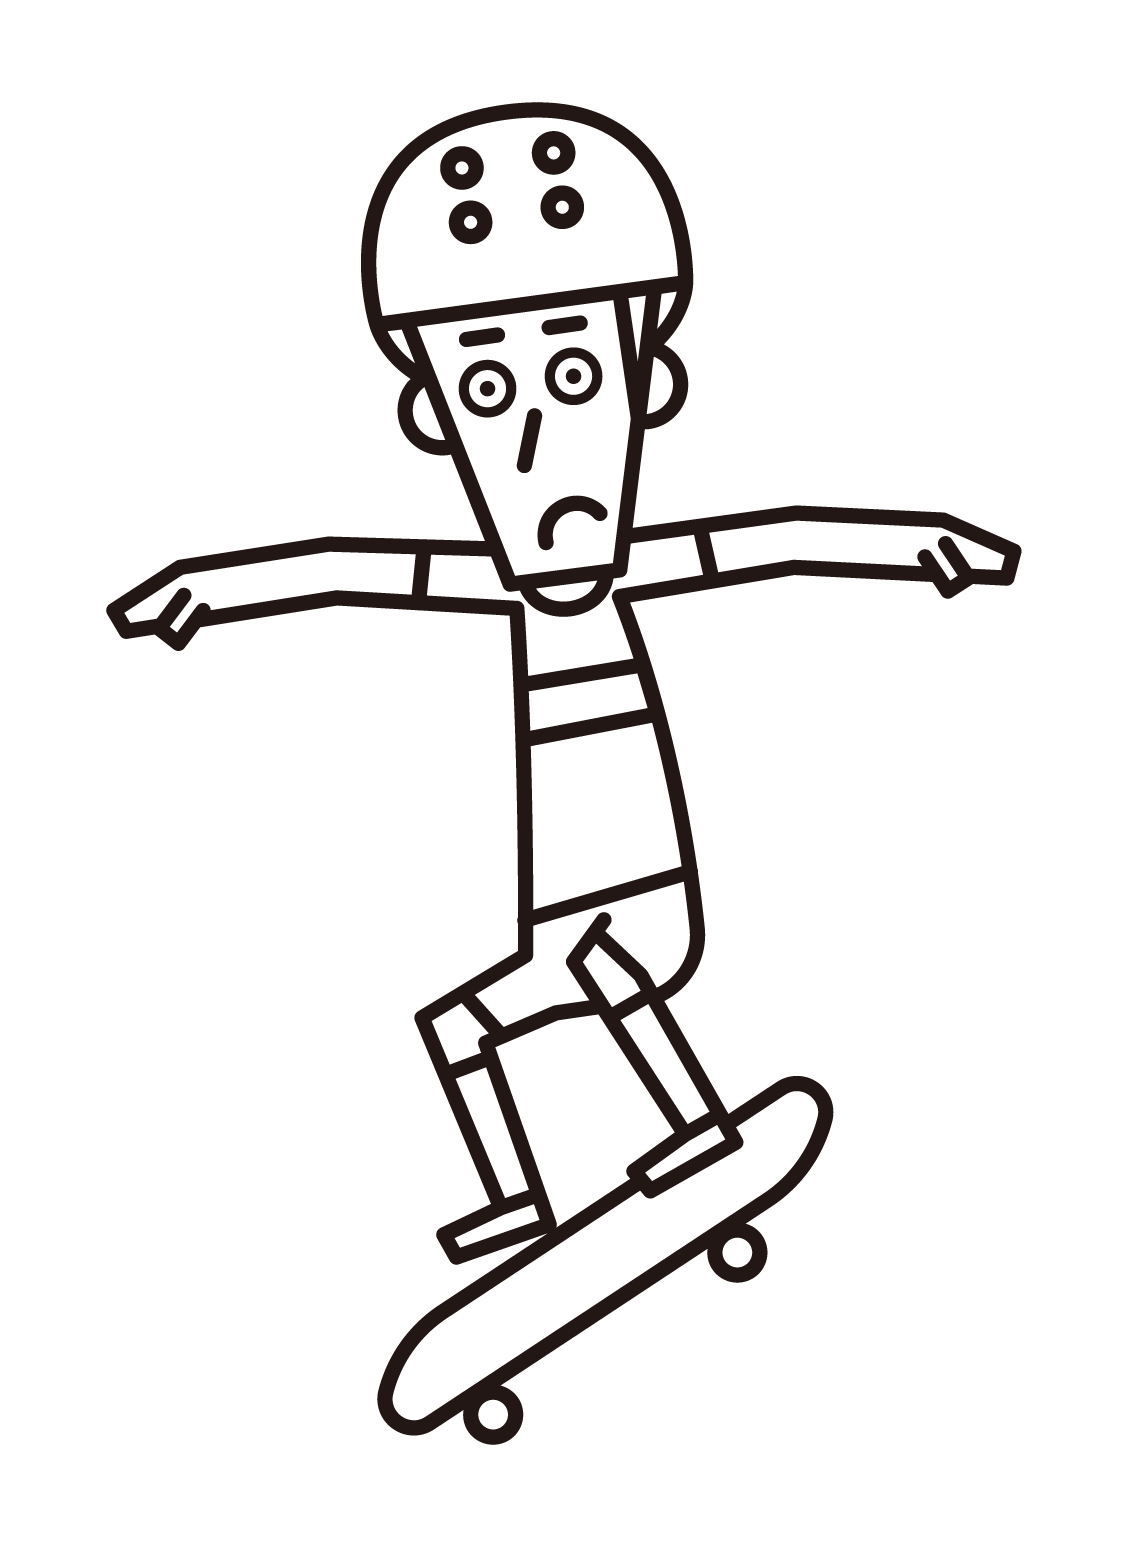 스케이트보드에 점프하는 선수(남성)의 일러스트